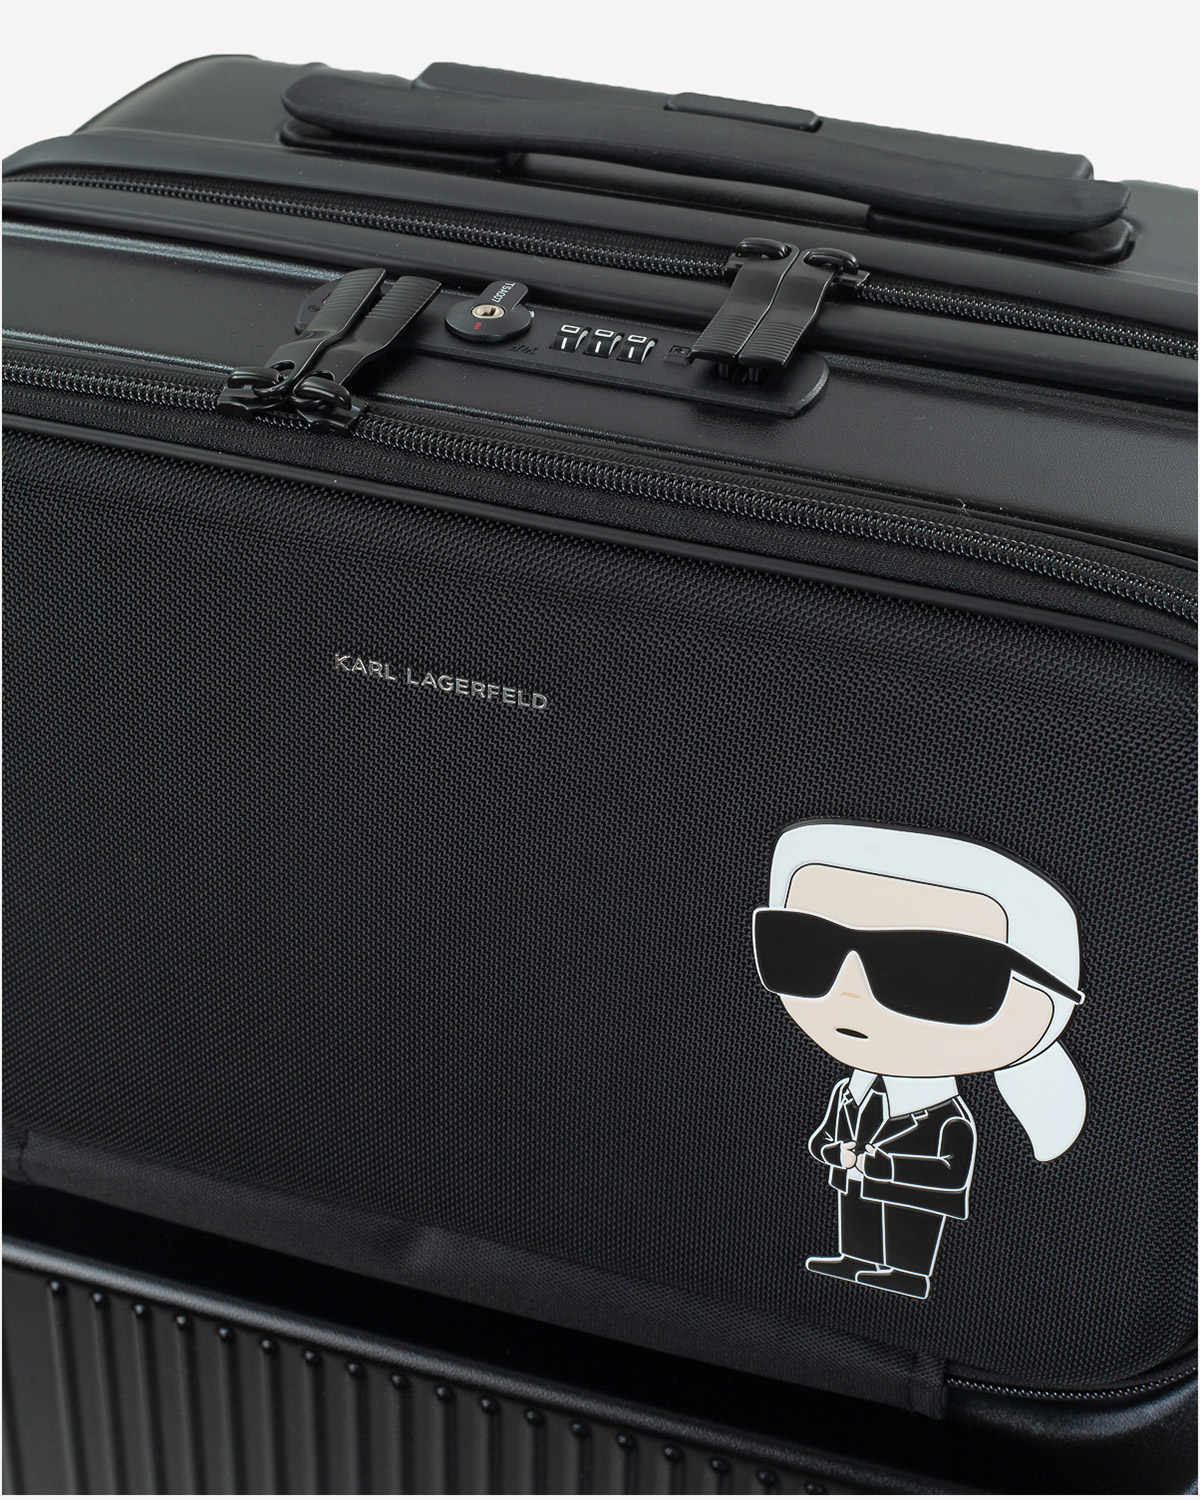 Γυναίκα - Travel Luggage - Karl Lagerfeld Μαύρο